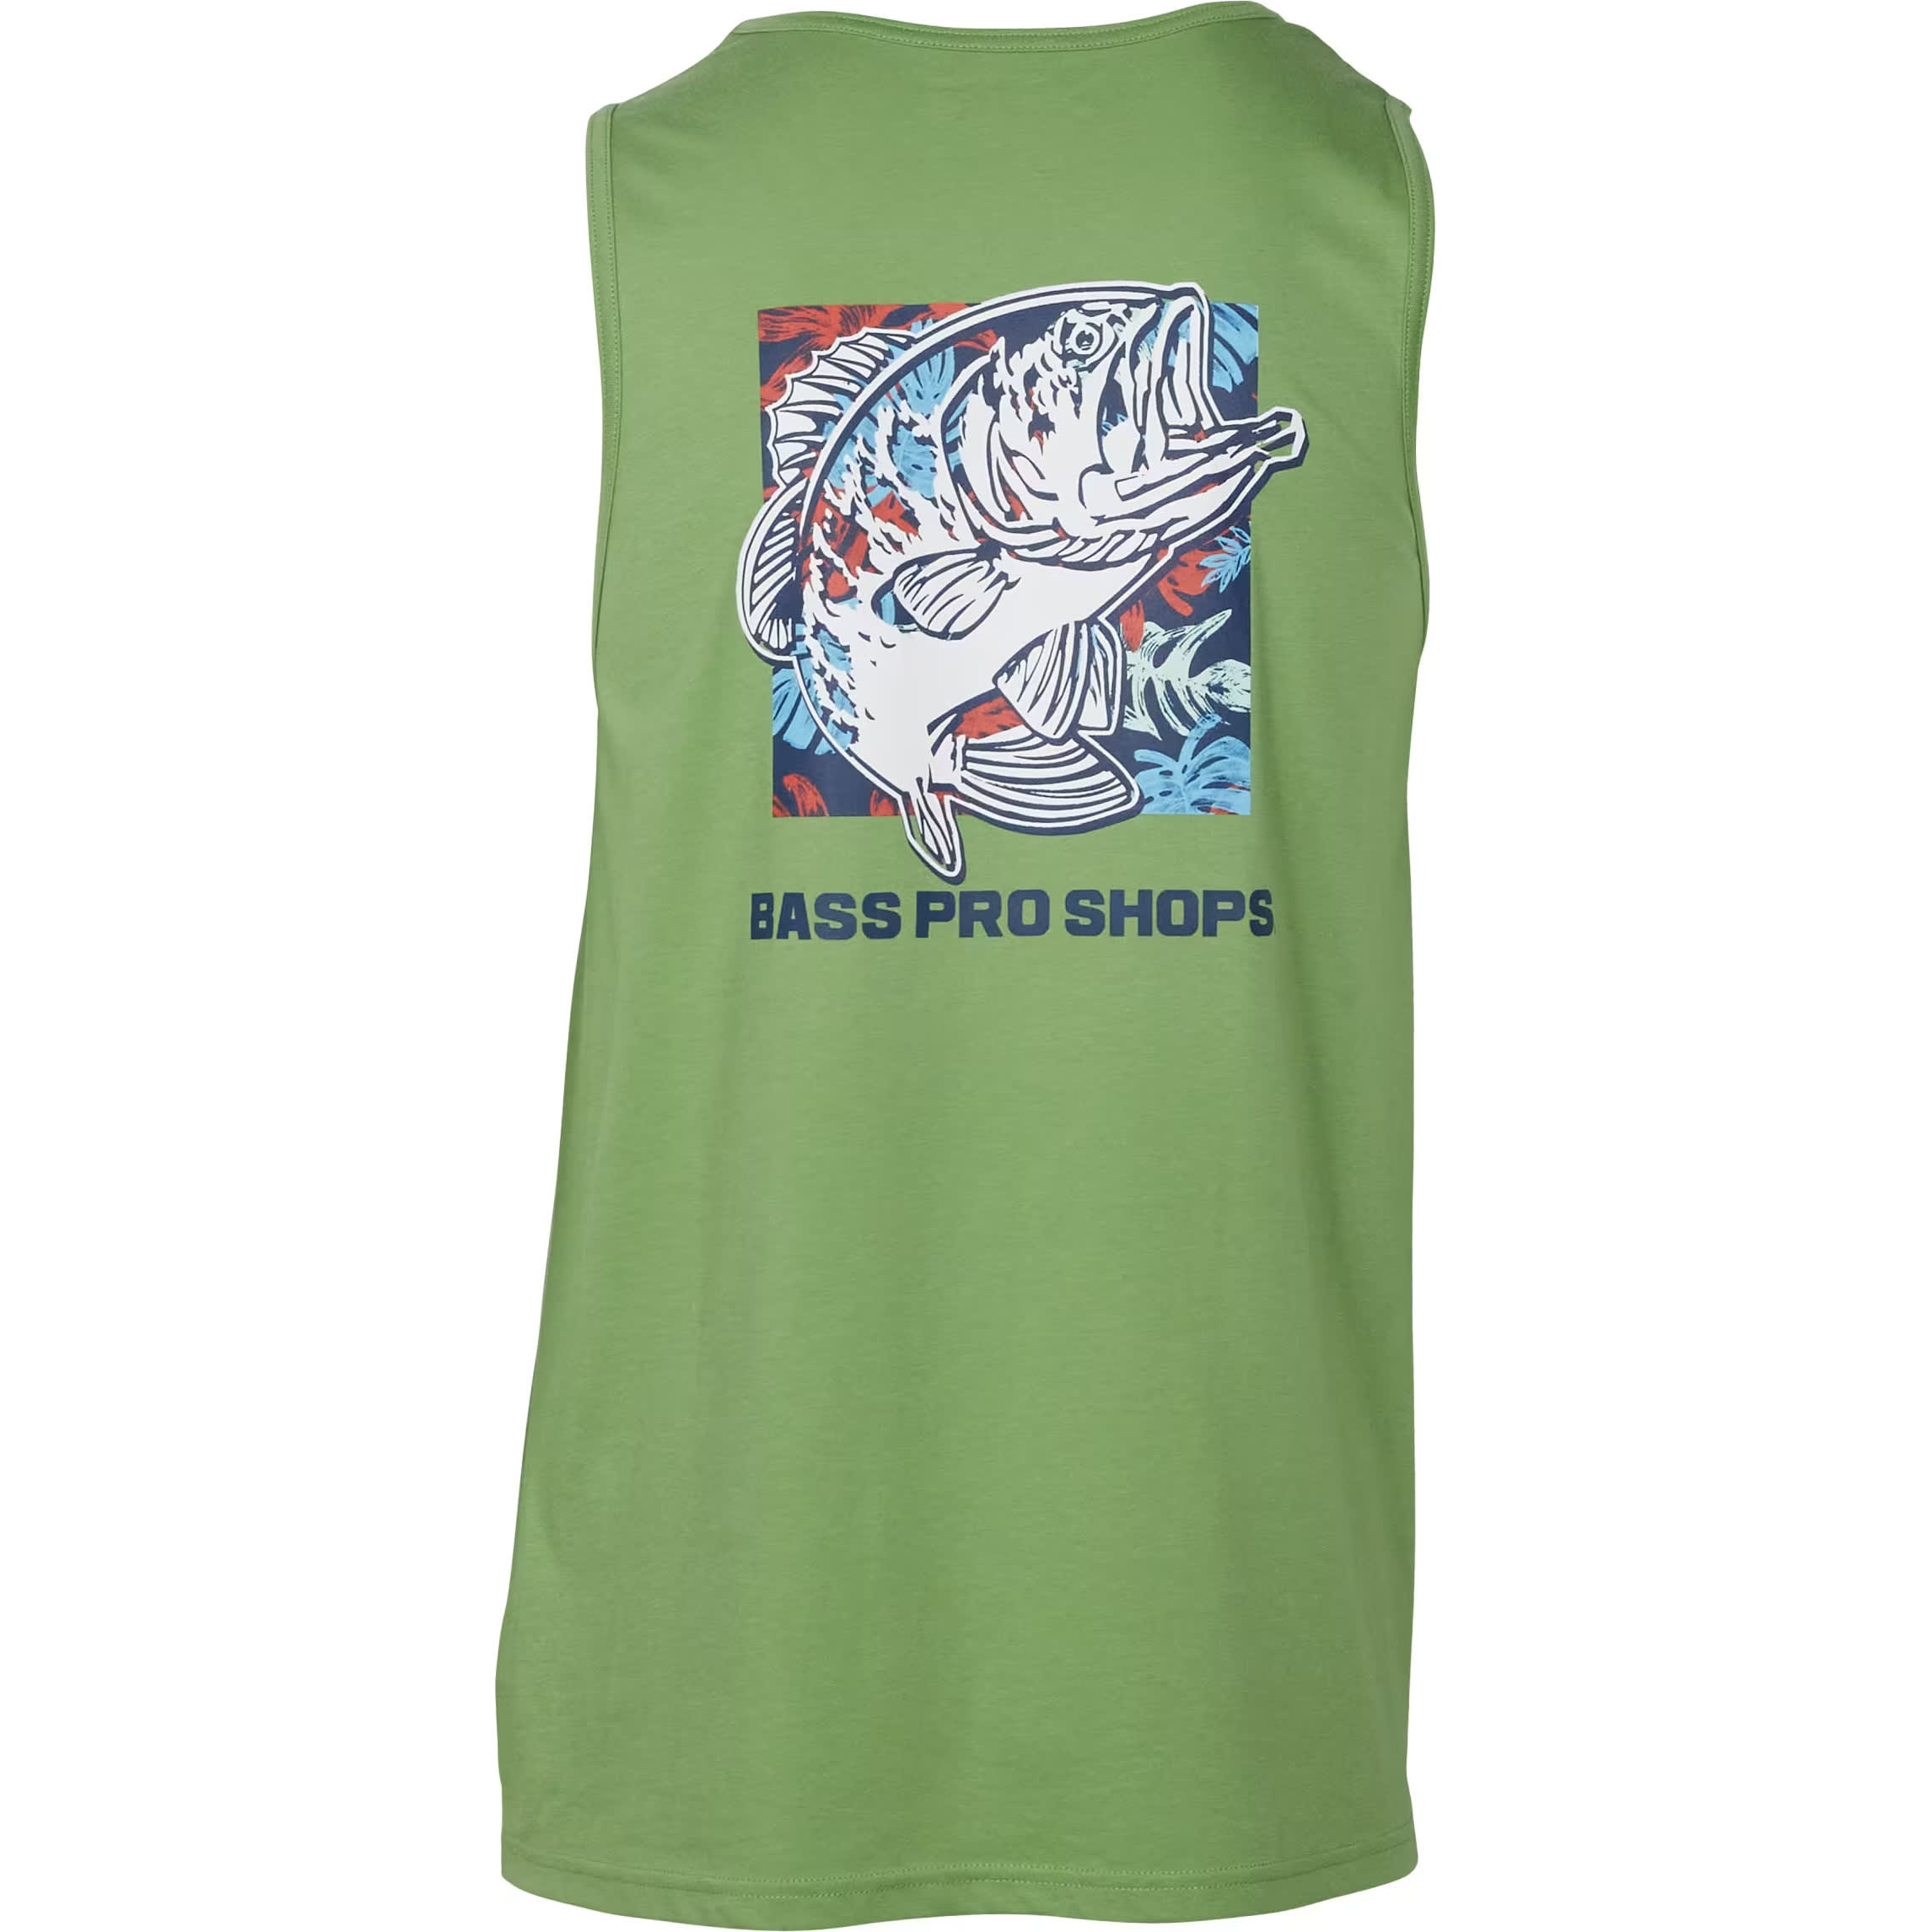 Bass Pro Shops® Men’s Bass Graphic Tank Top